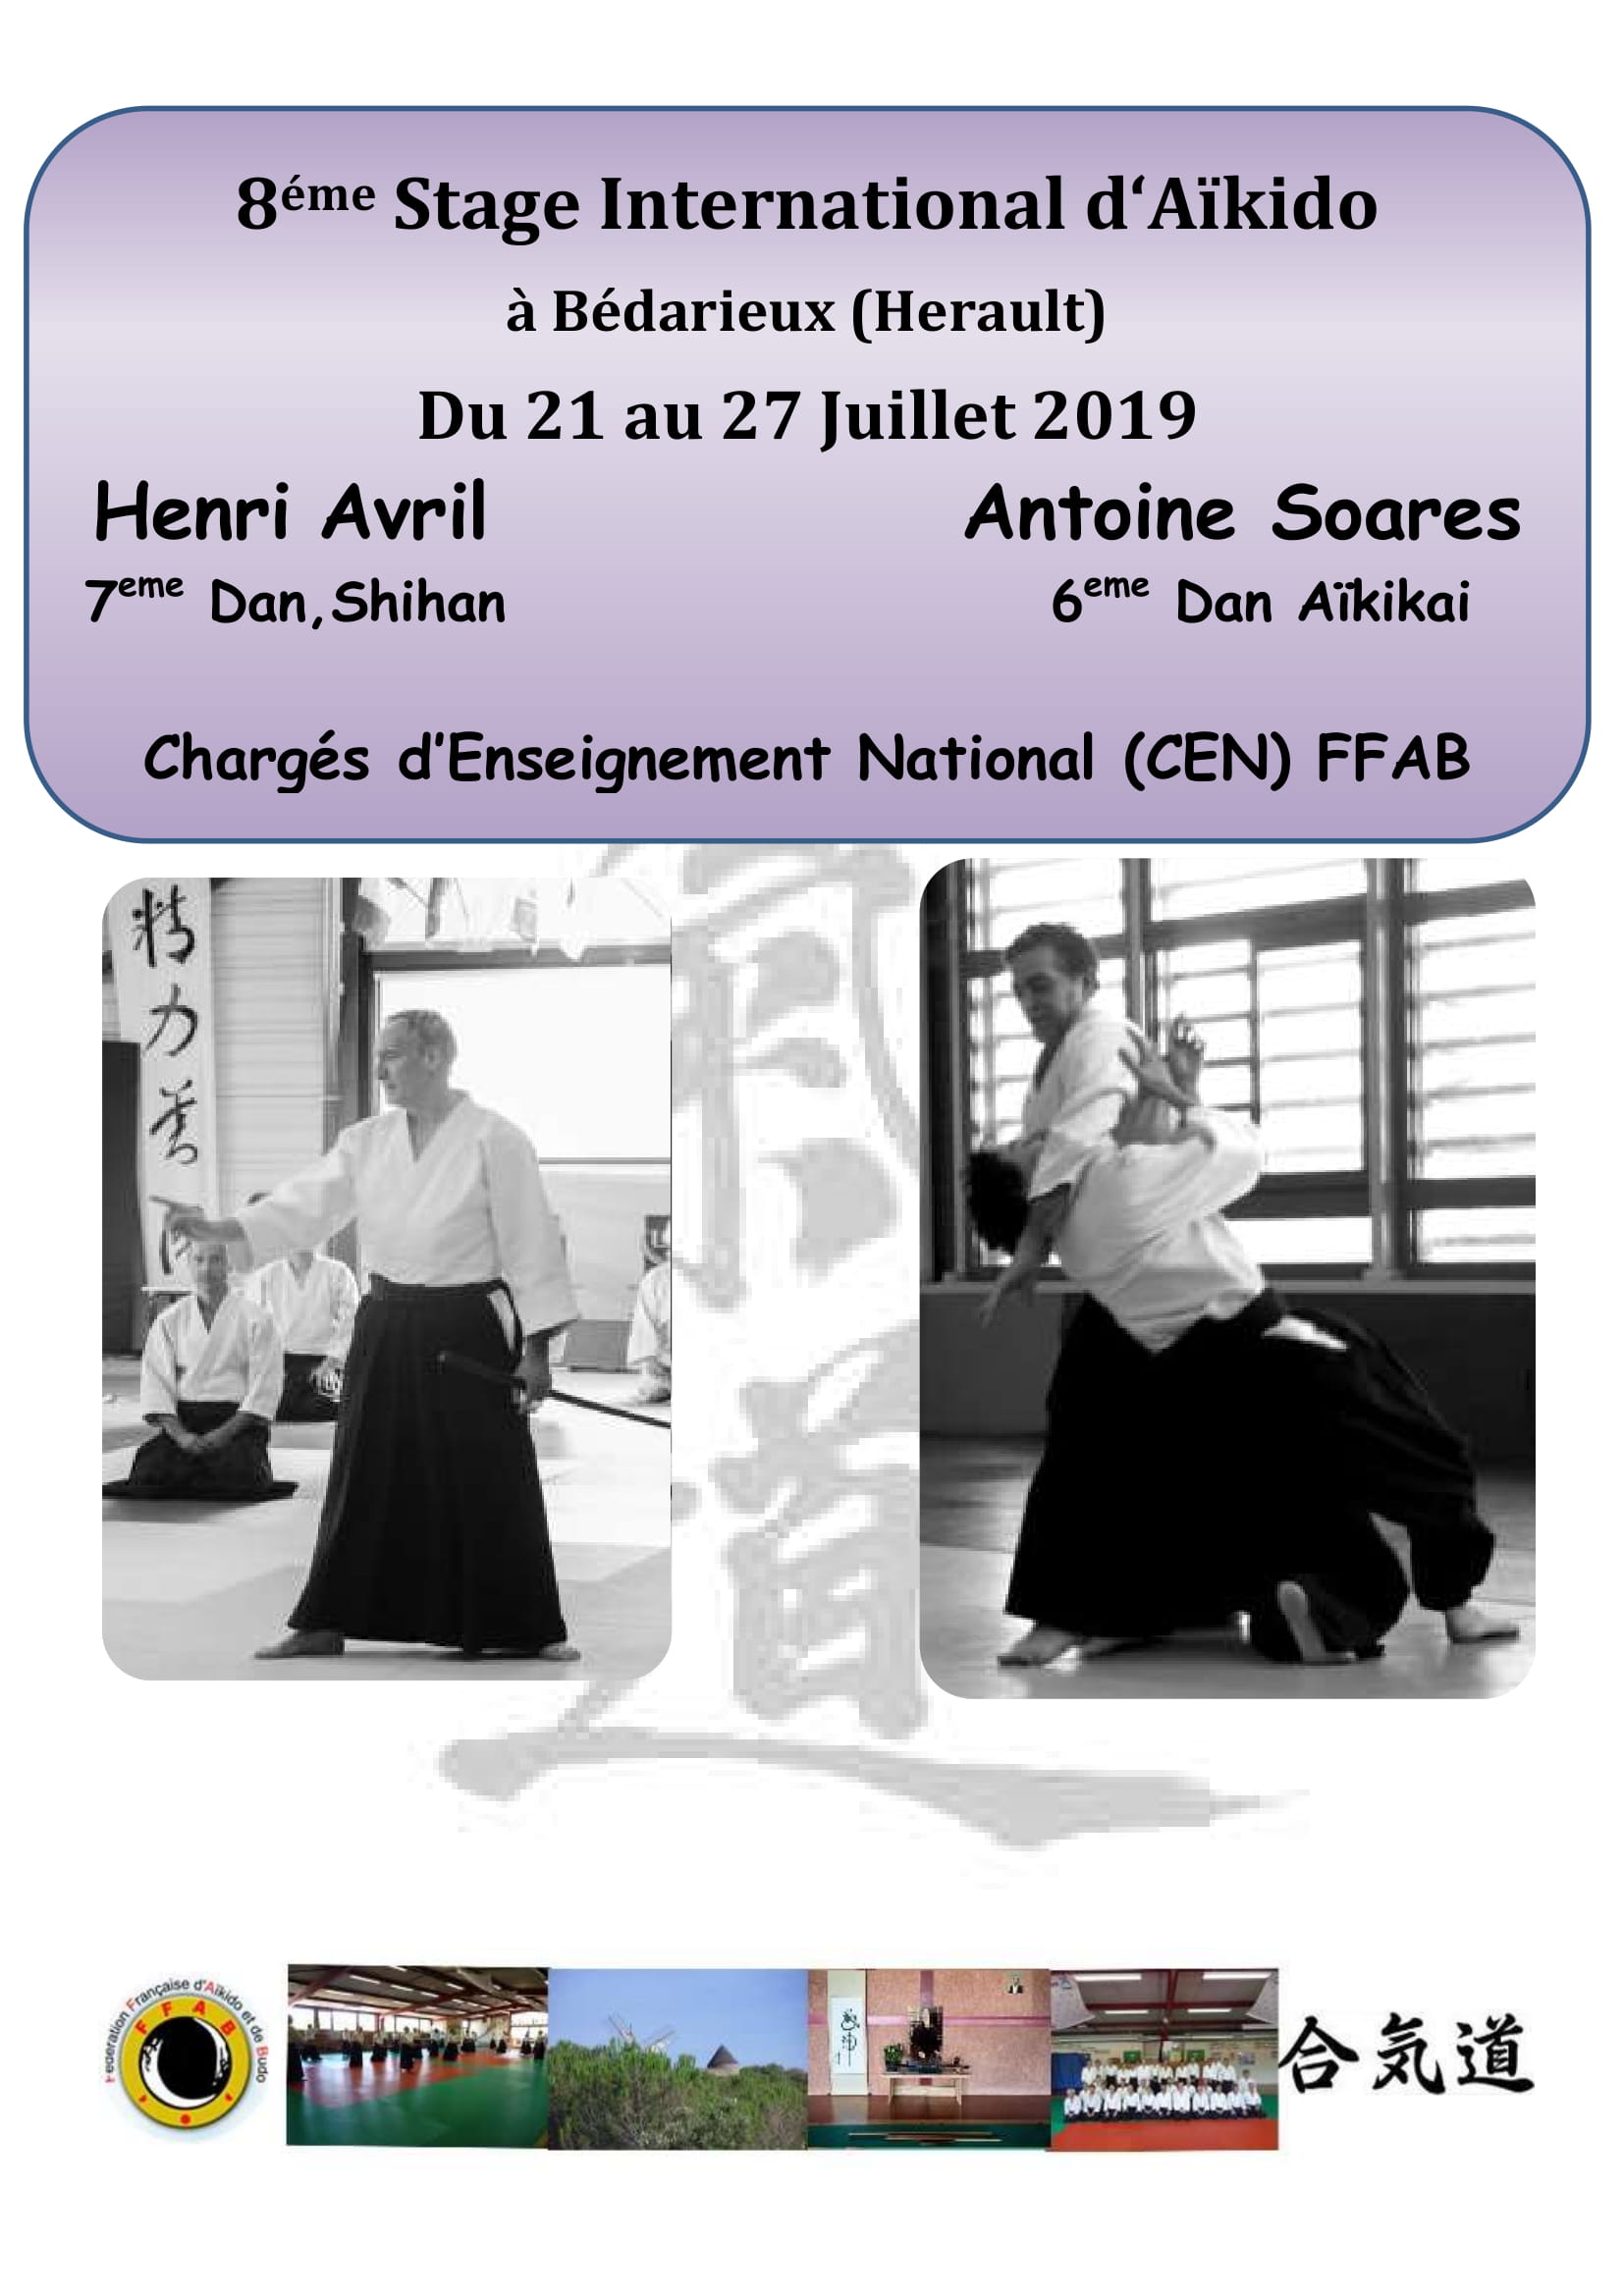 21 au 27 Juillet 2019 à Bédarieux (Herault) 8ème Stage International d'Aïkido animé par Henri Avril 7ème Dan, Shihan et Antoine Soares 6ème Dan Aïkikai